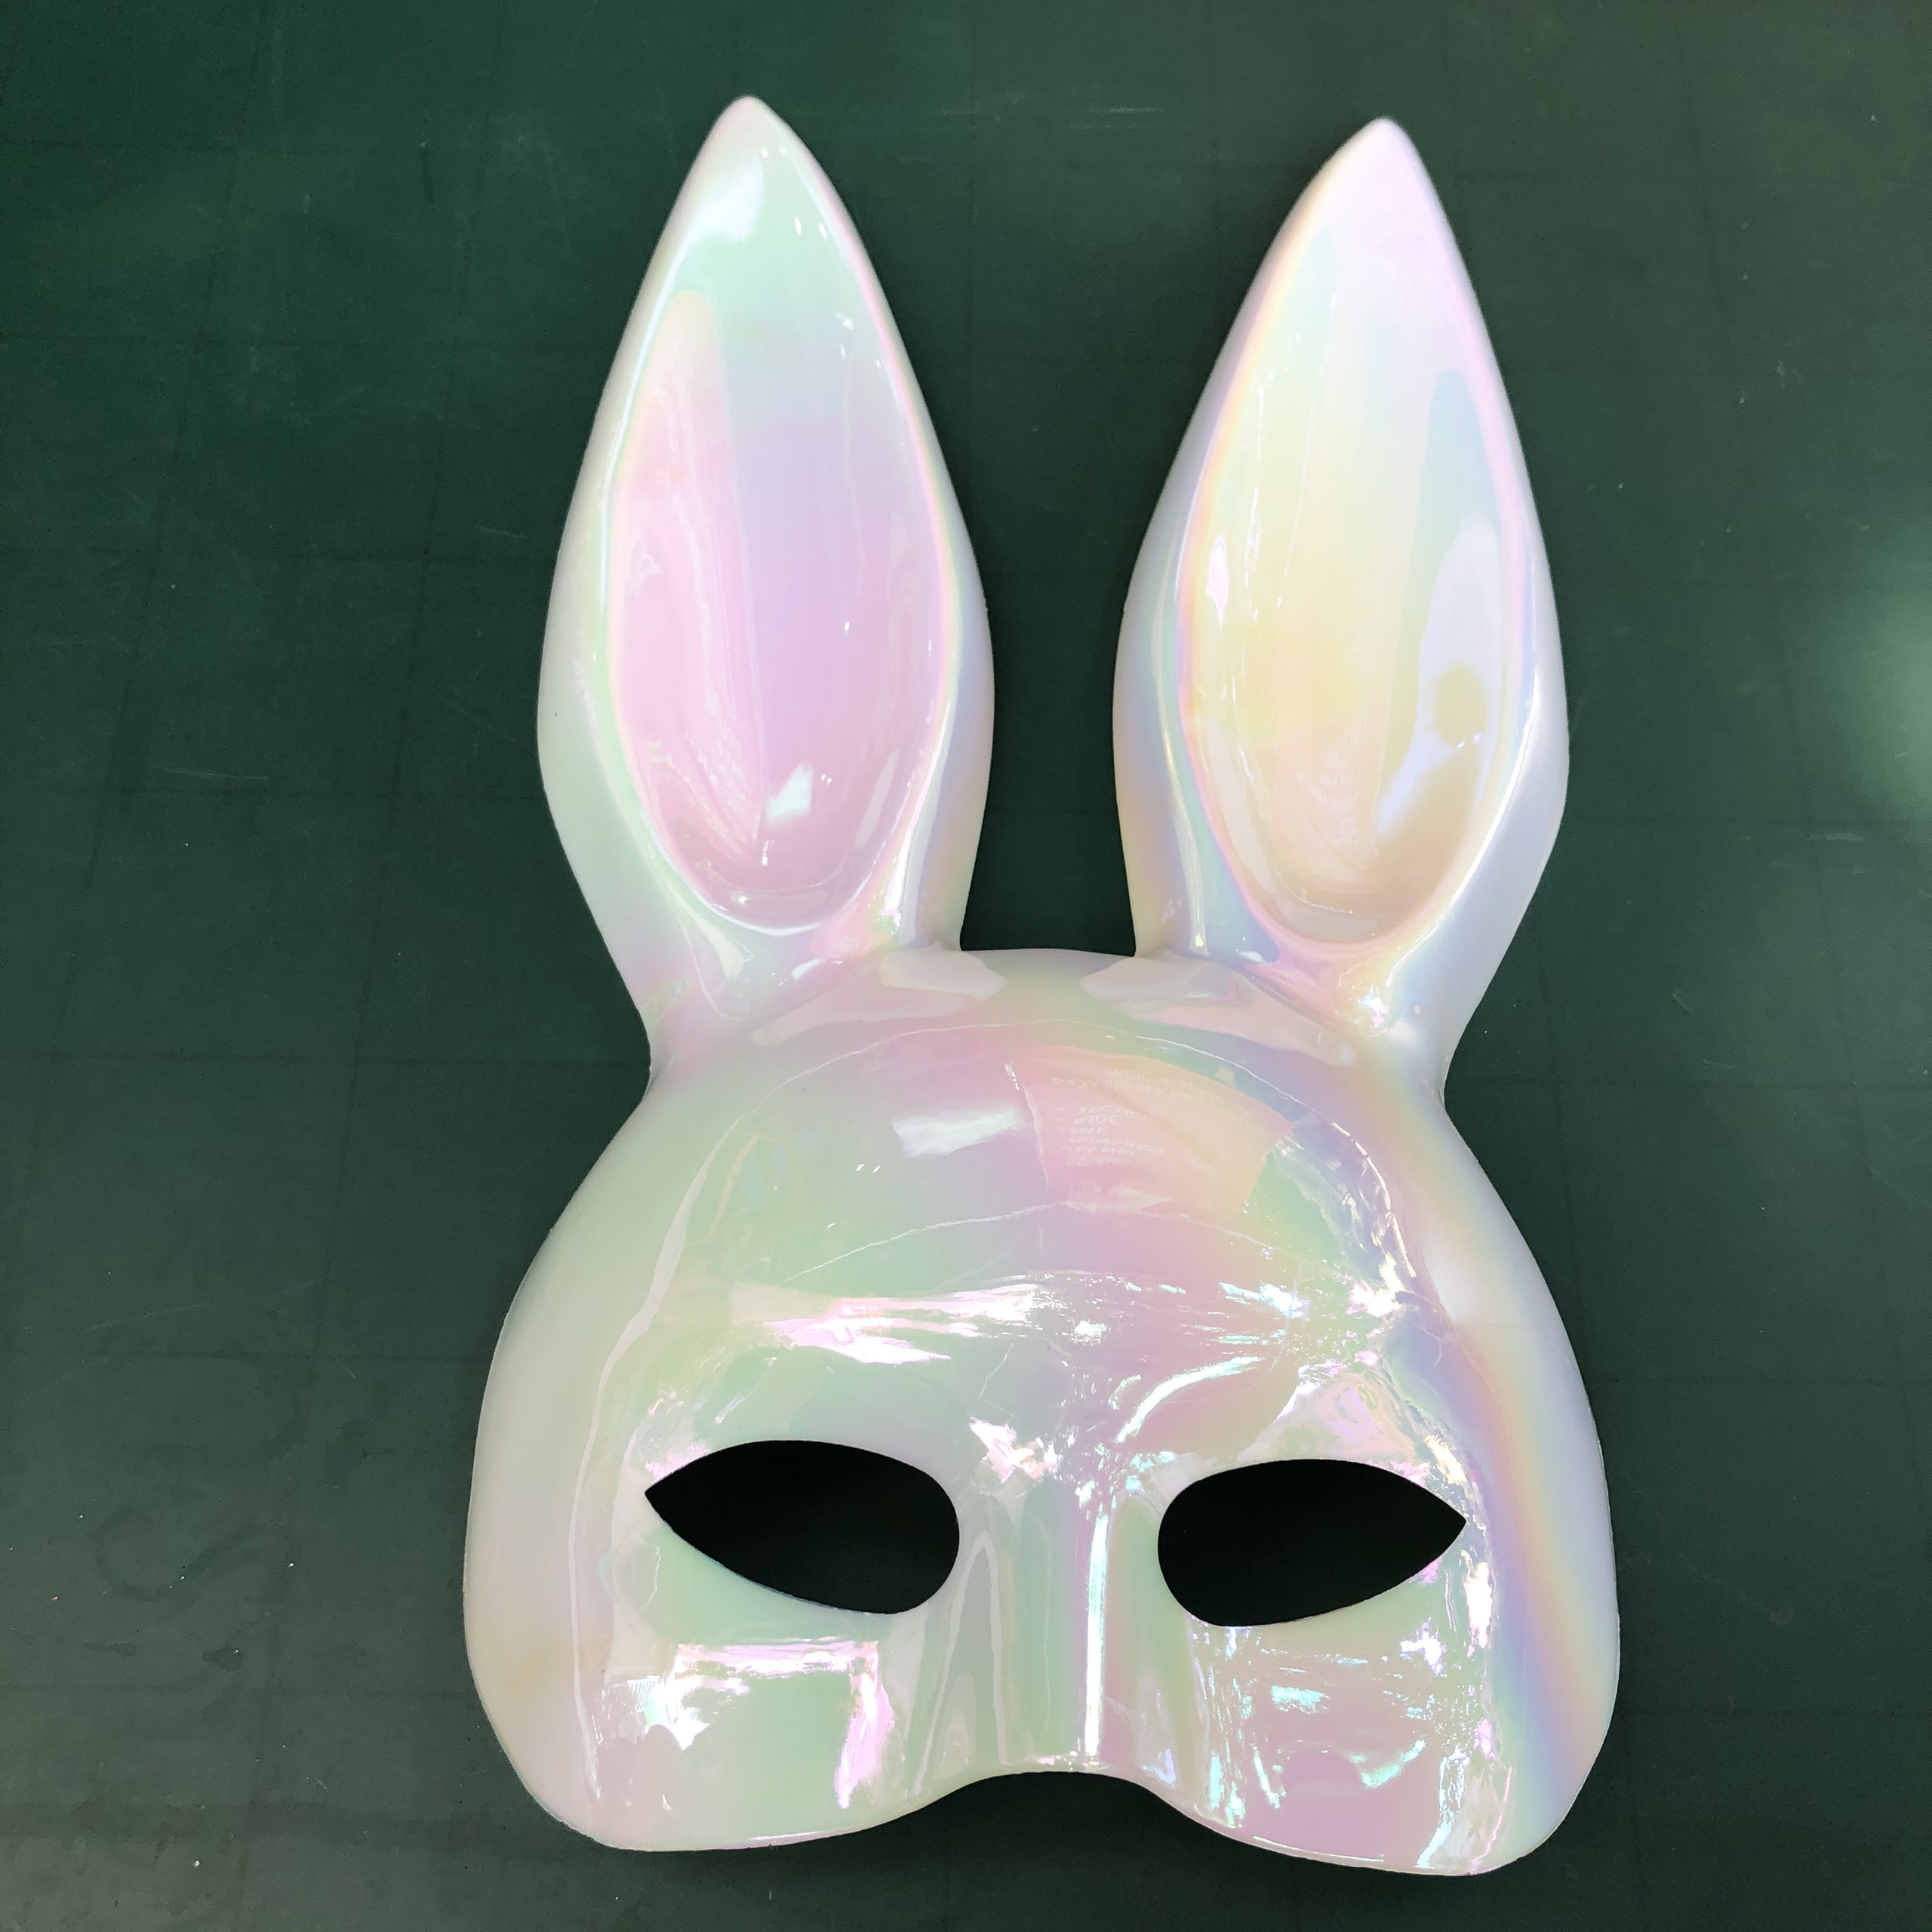 Mặt nạ hóa trang Thỏ Bunny xà cừ tai dài chơi Halloween cho trẻ em và người lớn